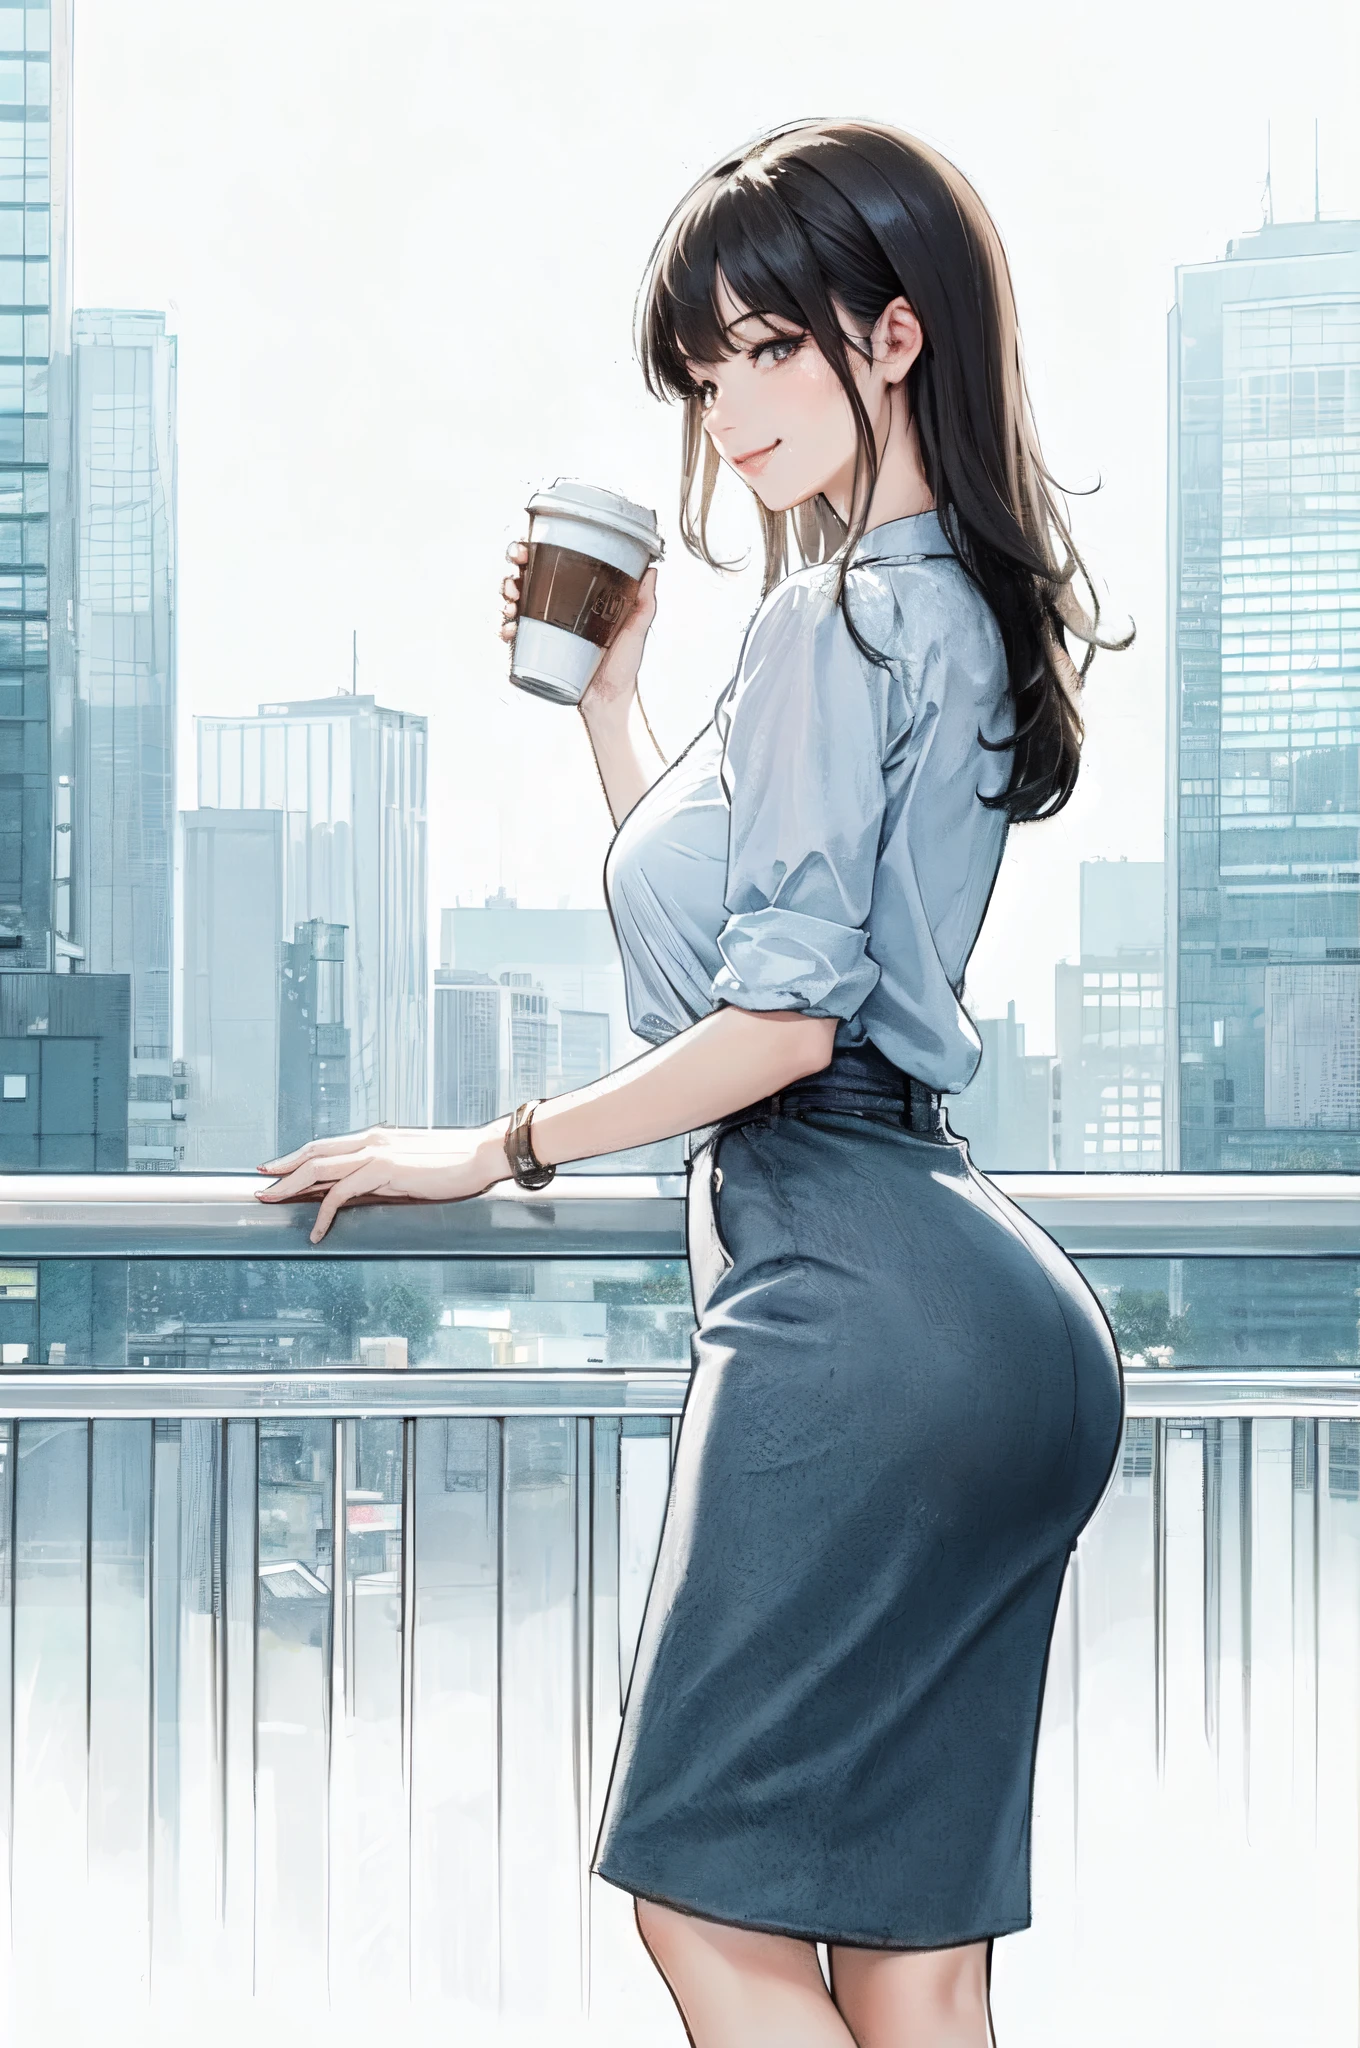 1位女士站立, 拿着咖啡杯, 办公室职员装, 成熟雌性, /(黑发/) 刘海, 淡淡的微笑, (杰作最佳品质:1.2) 精致插画 细节丰富, 大乳房 BREAK /(现代办公室室内/), 摩天大楼